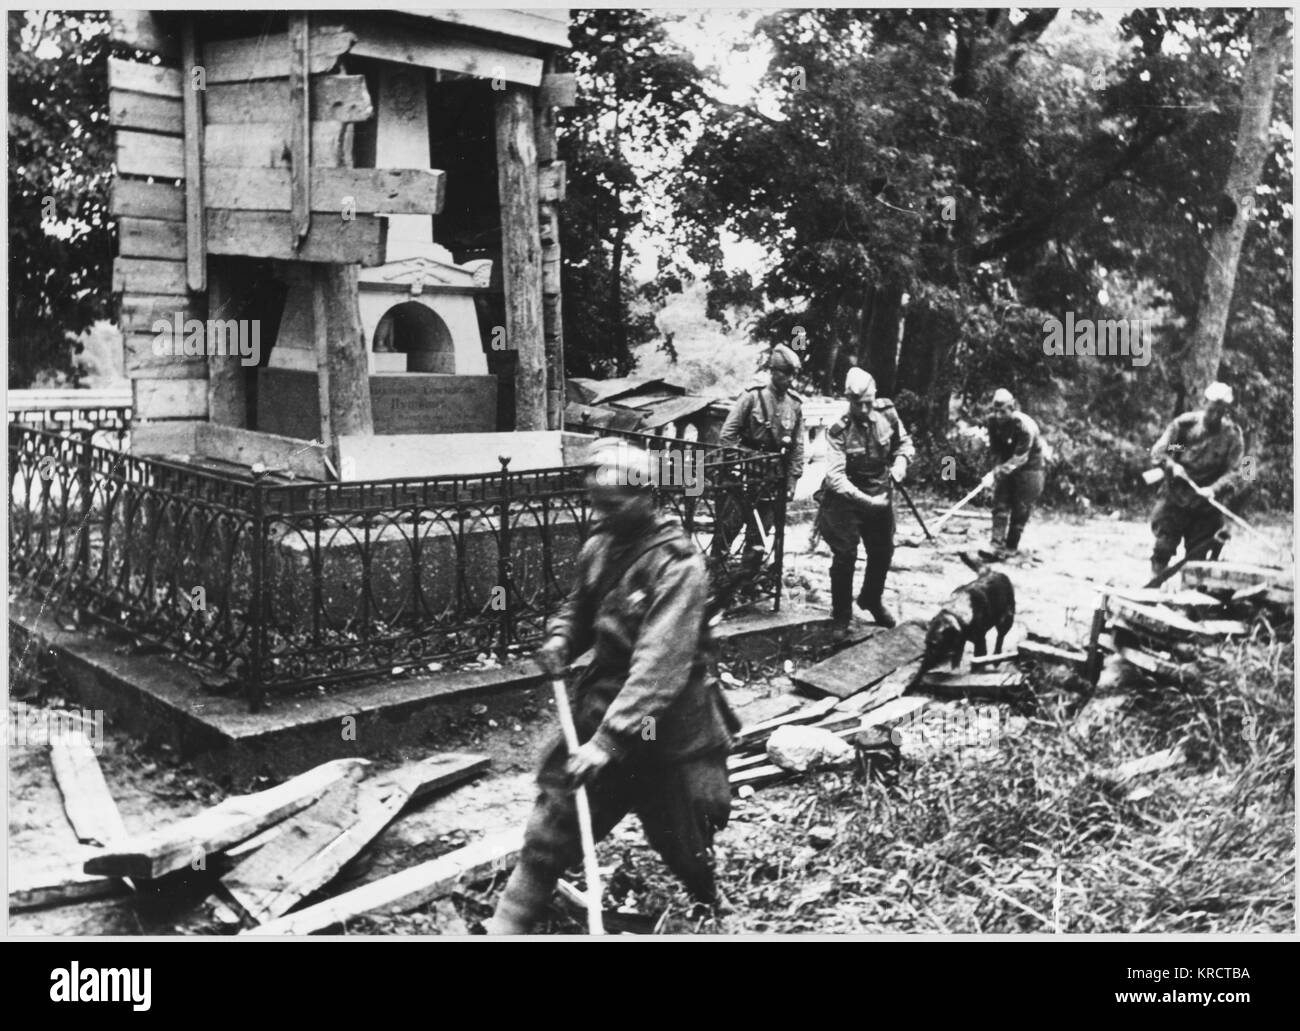 Equipo de eliminación de bombas soviética revisar el área alrededor de la tumba de Pushkin. Fecha: 1942 - 1945 Foto de stock